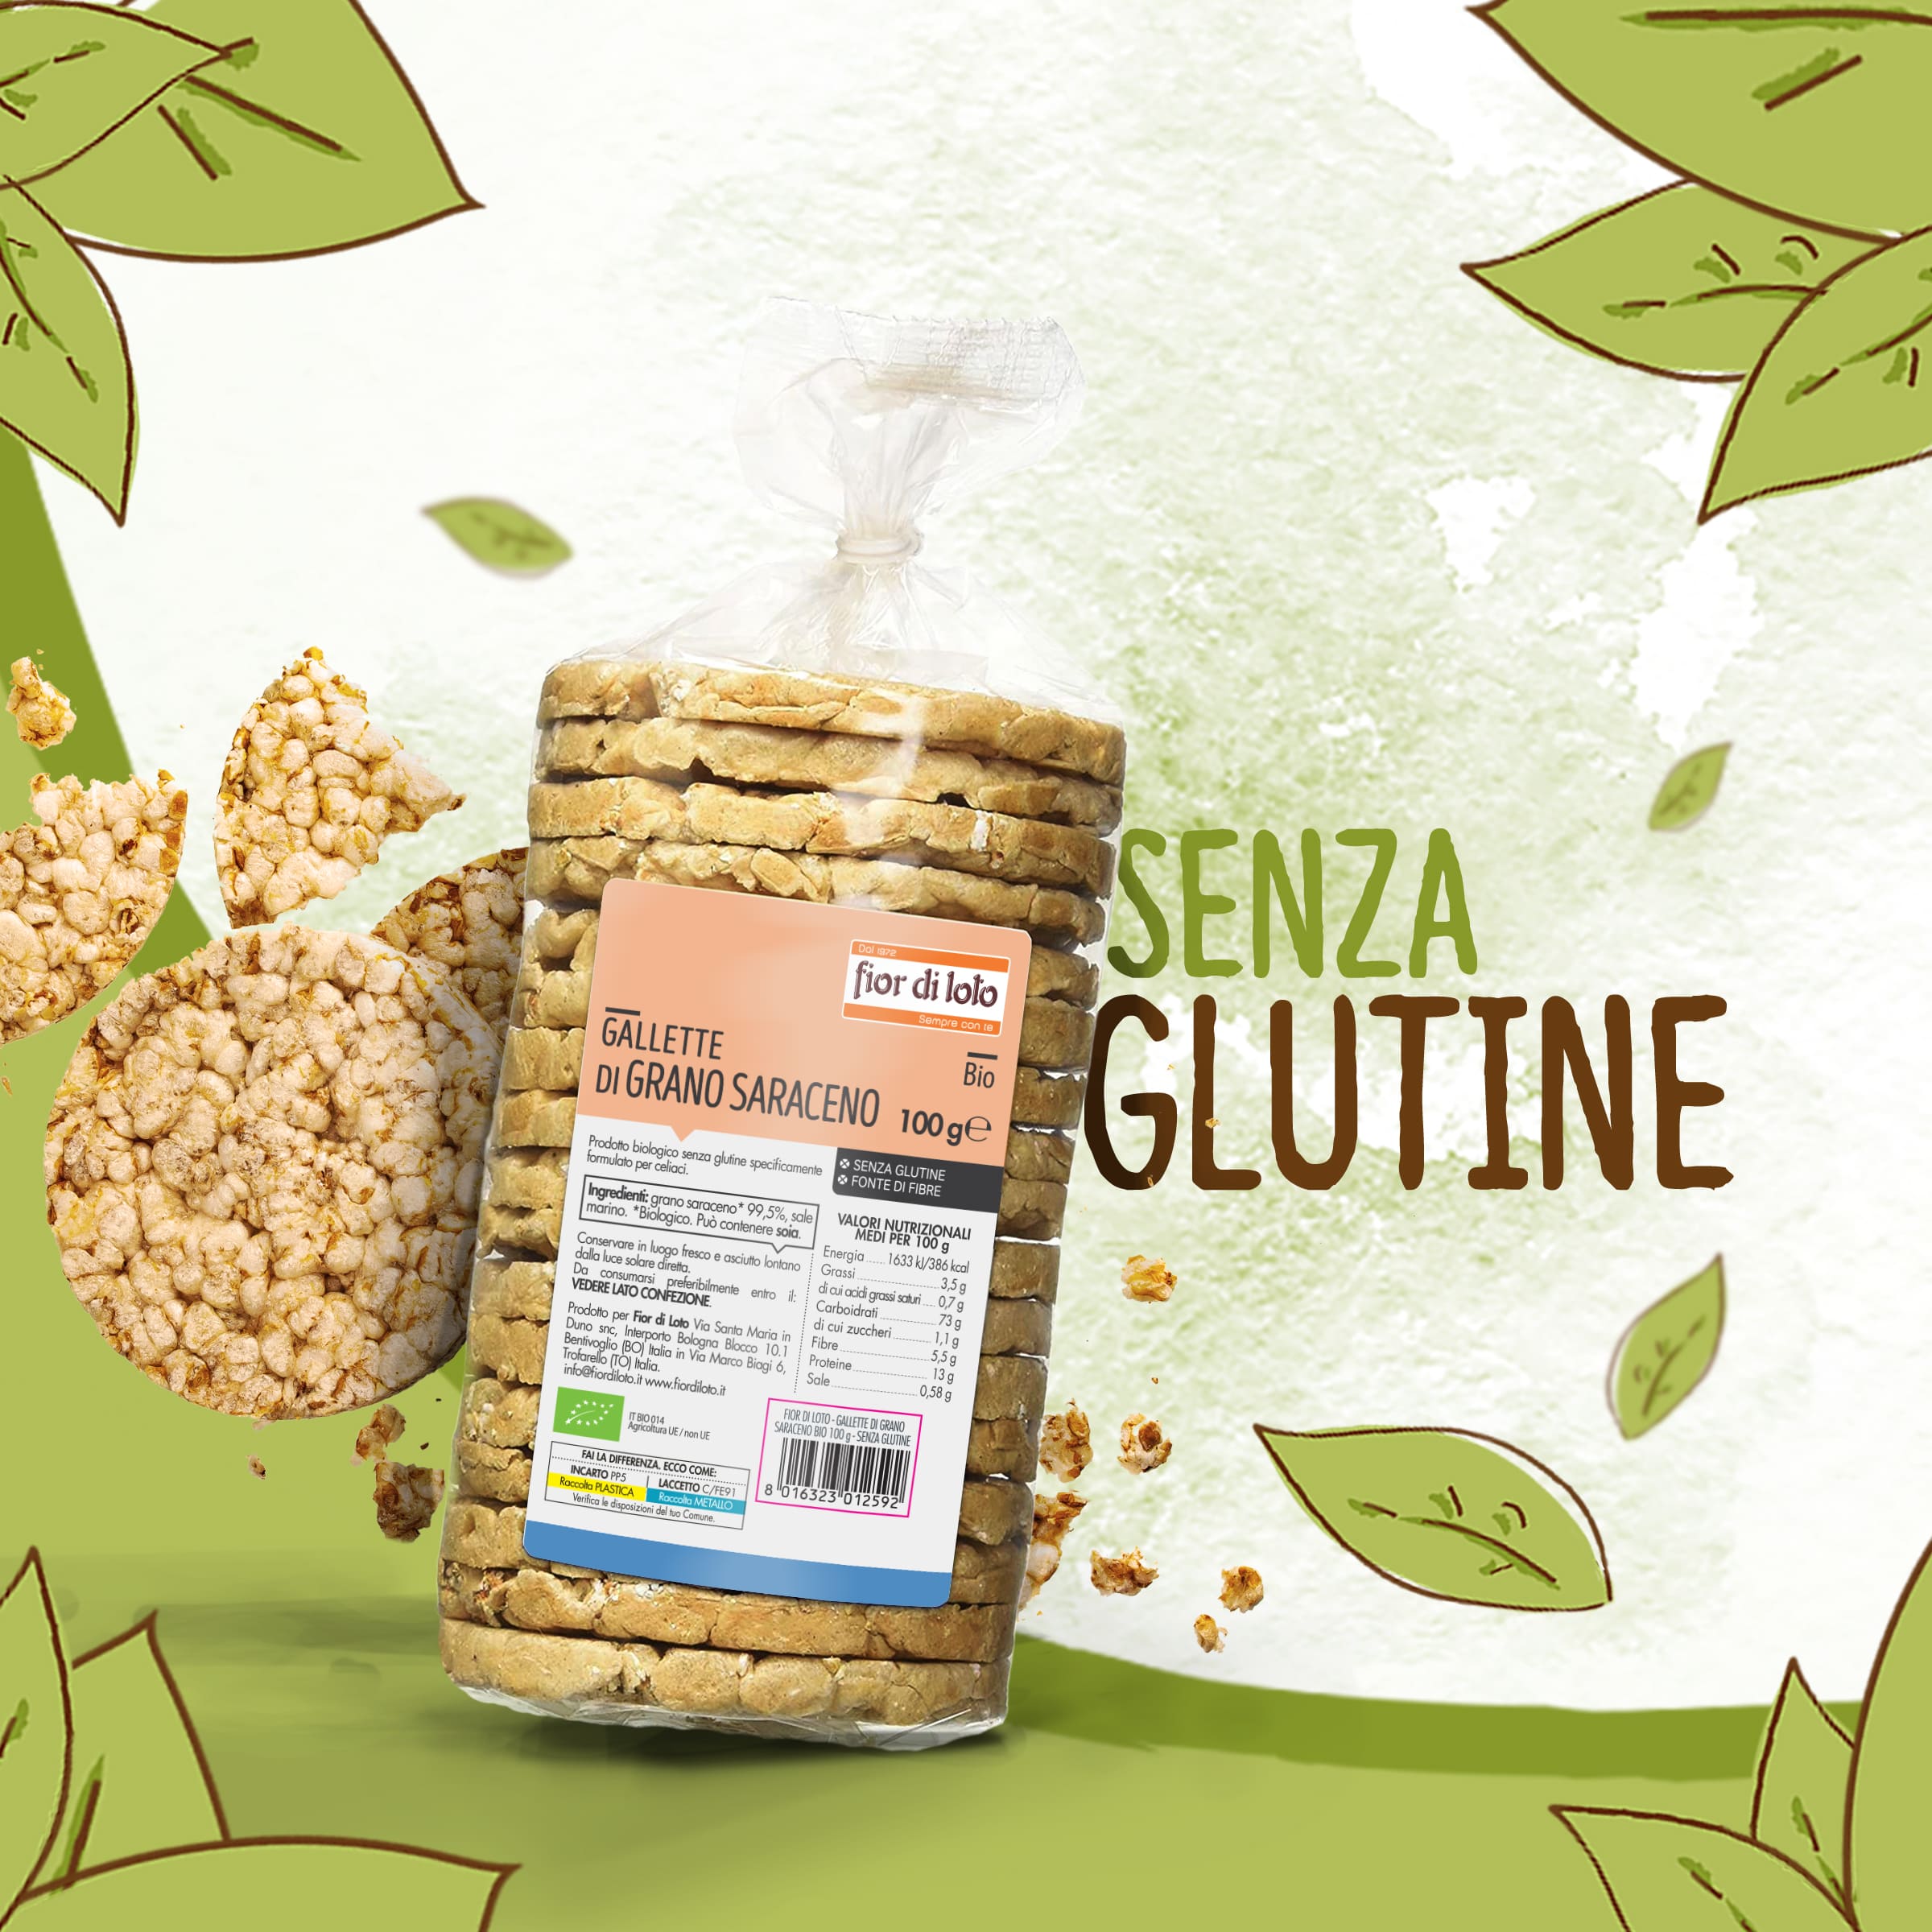 Croccanti e senza glutine: scopri le gallette di grano saraceno biologiche 